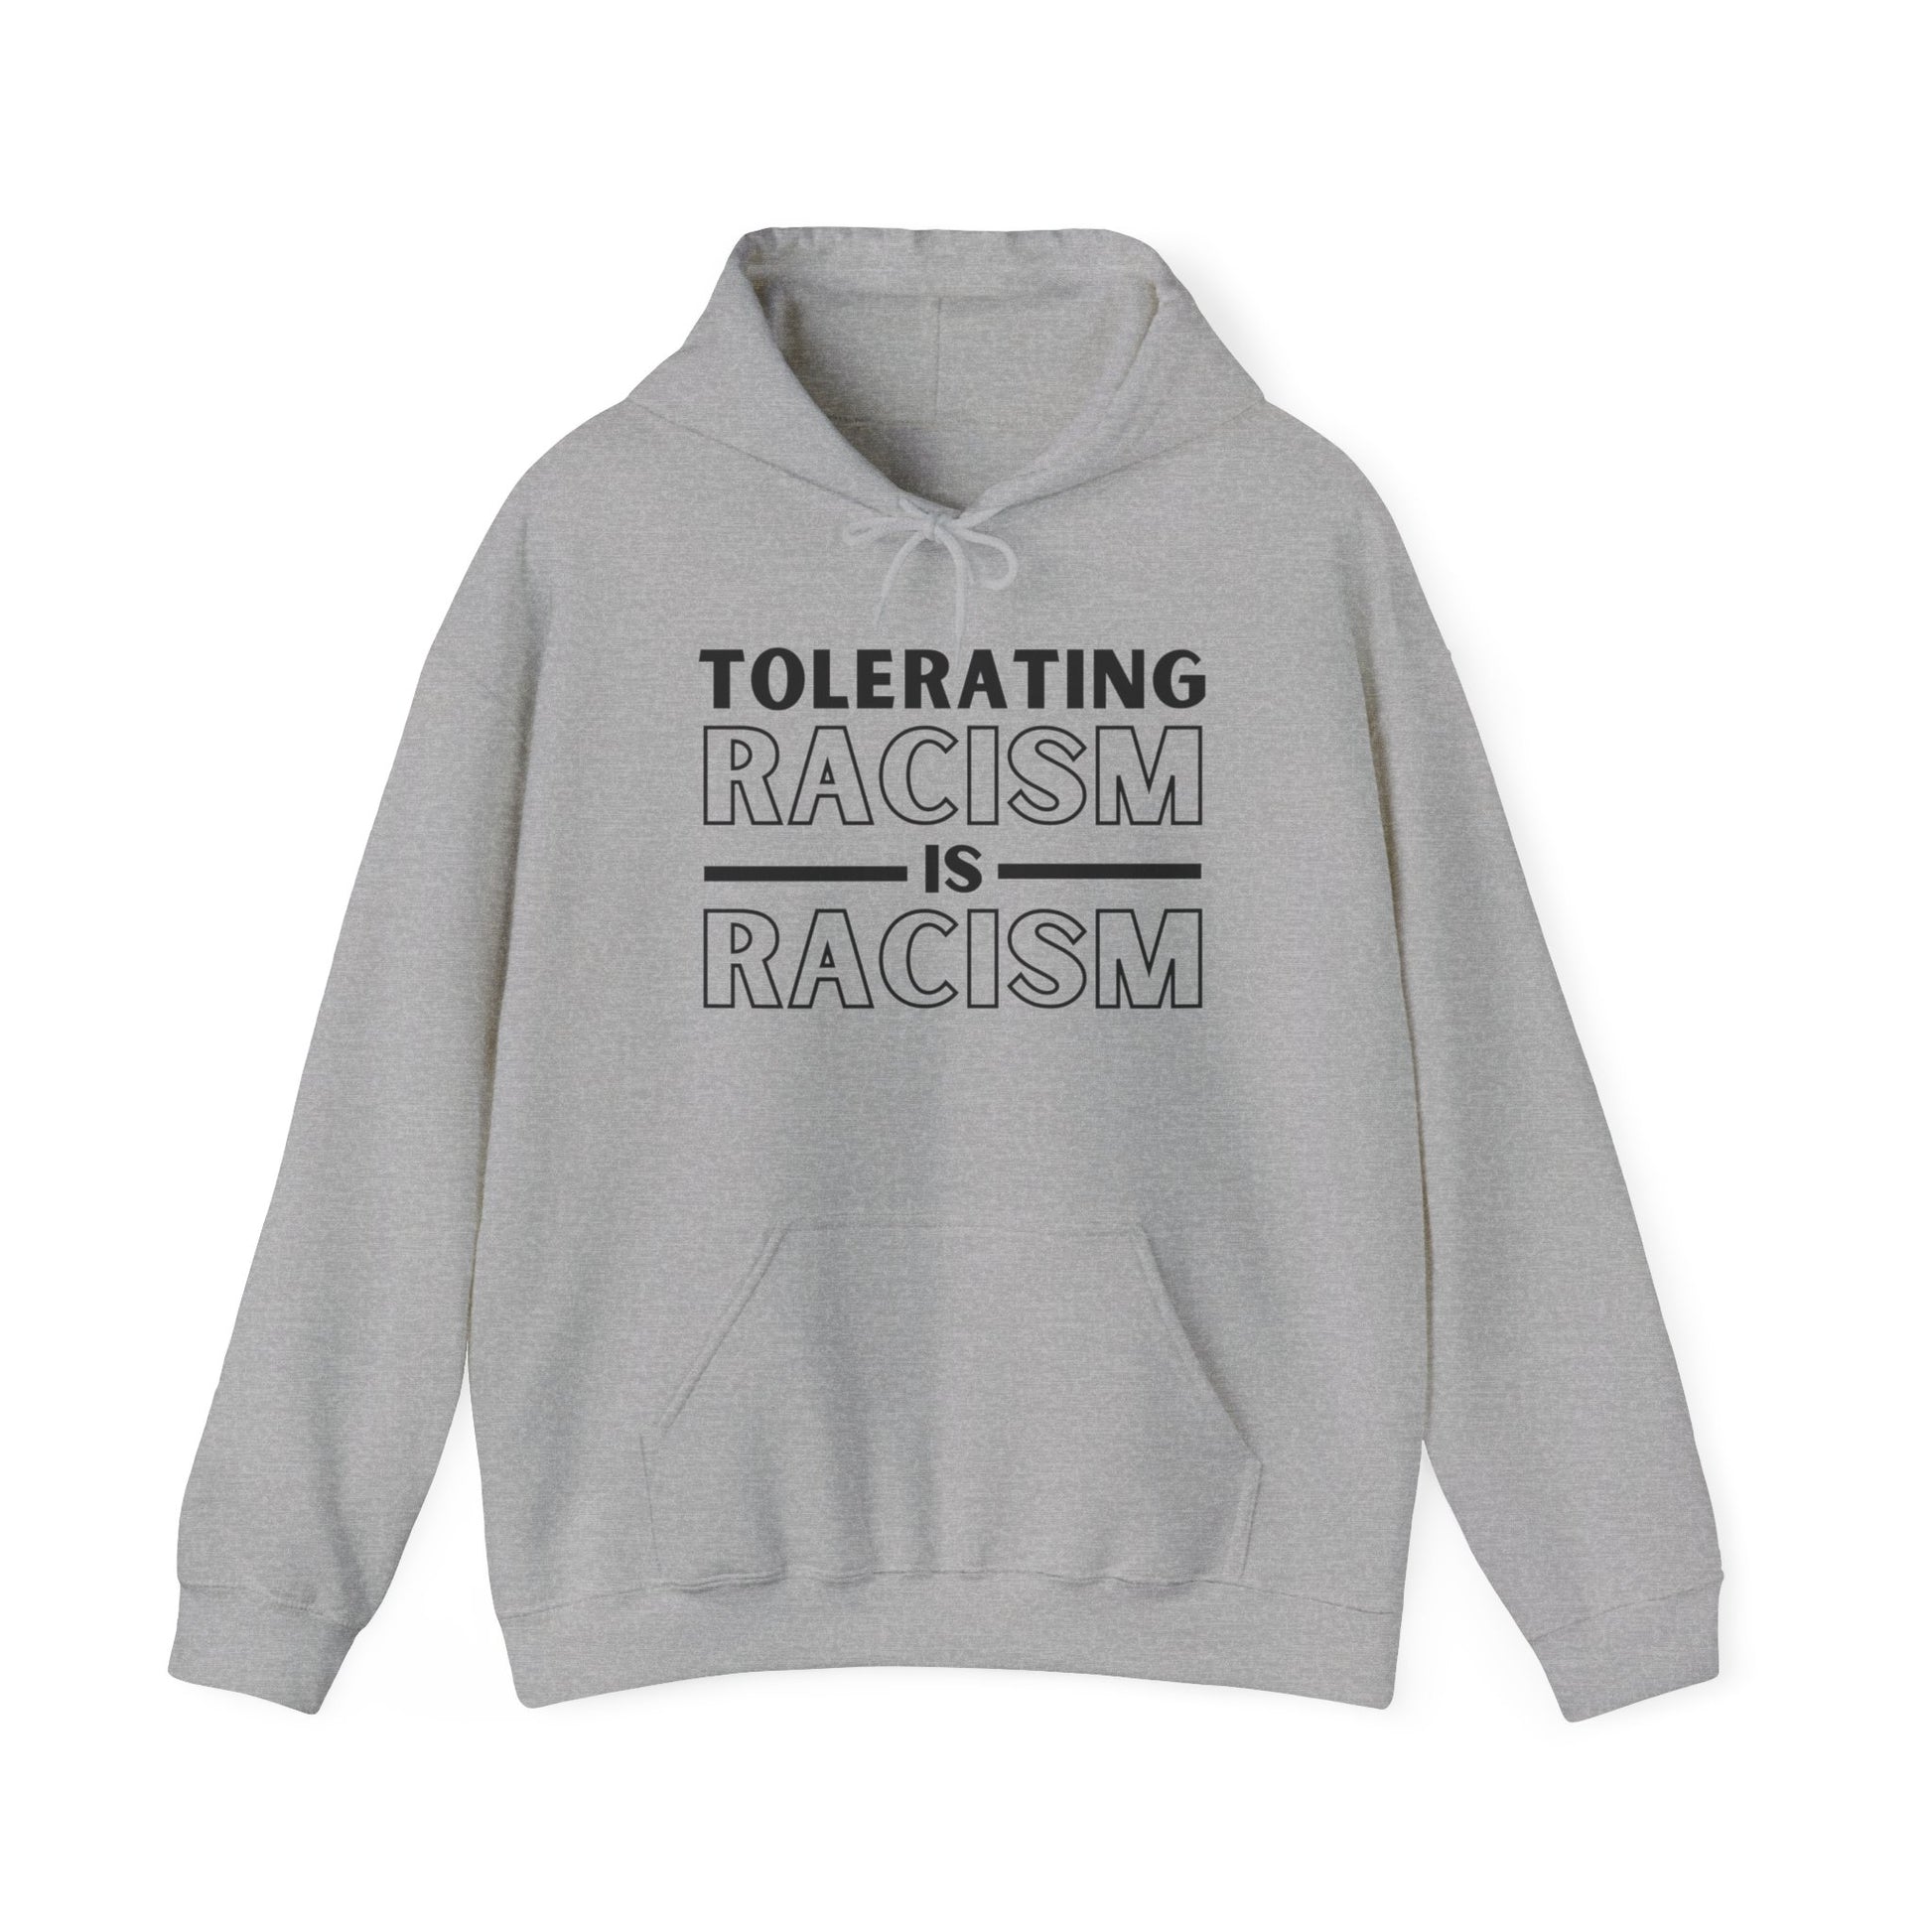 Sport grey anti-racism Gildan 18500 hooded sweatshirt with "Tolerating Racism Is Racism" design.